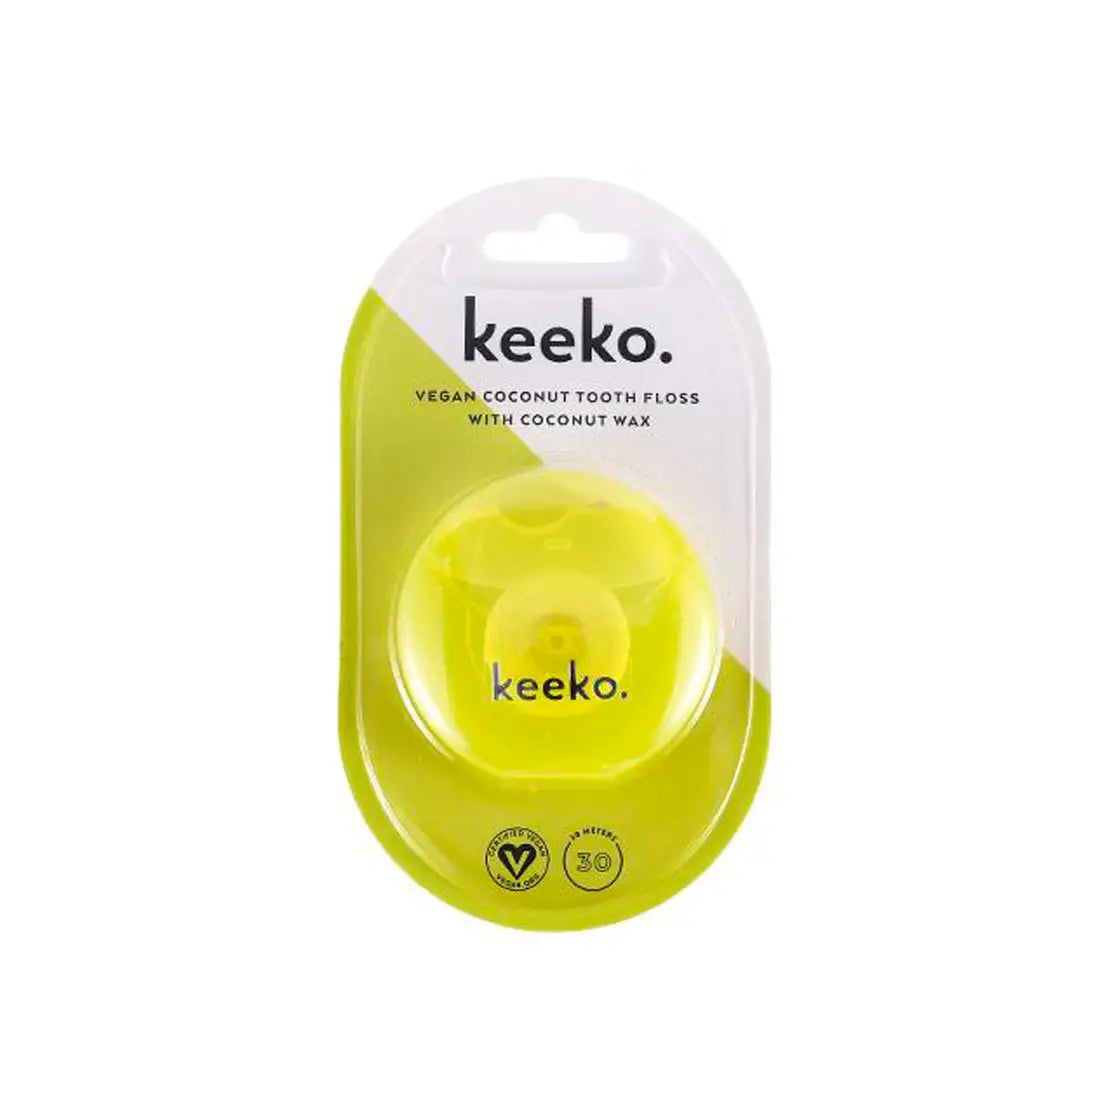 Keeko Oil Vegan Coconut Wax Tooth Floss